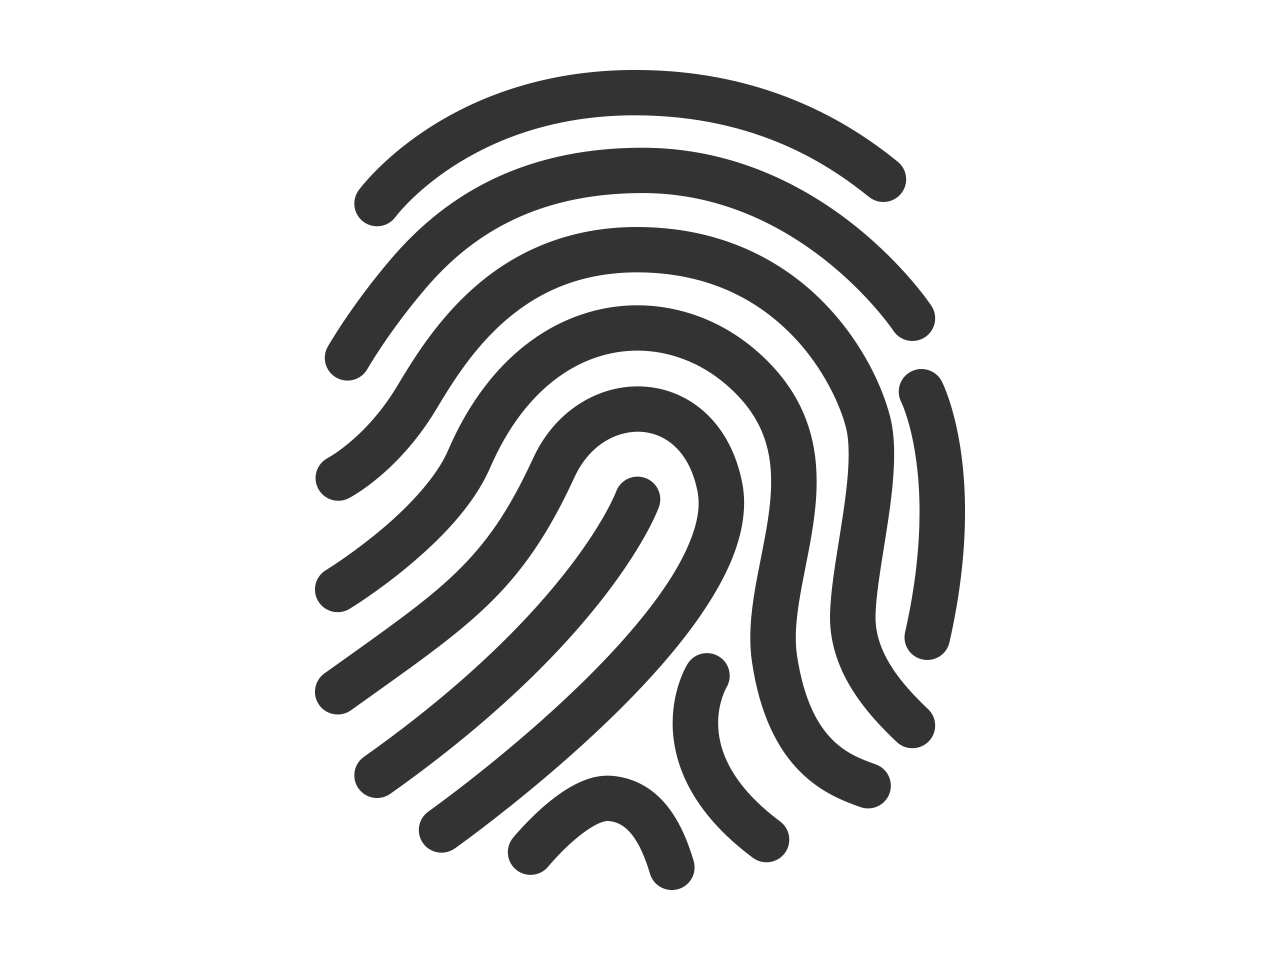 Fingerprint Free Download Png PNG Image